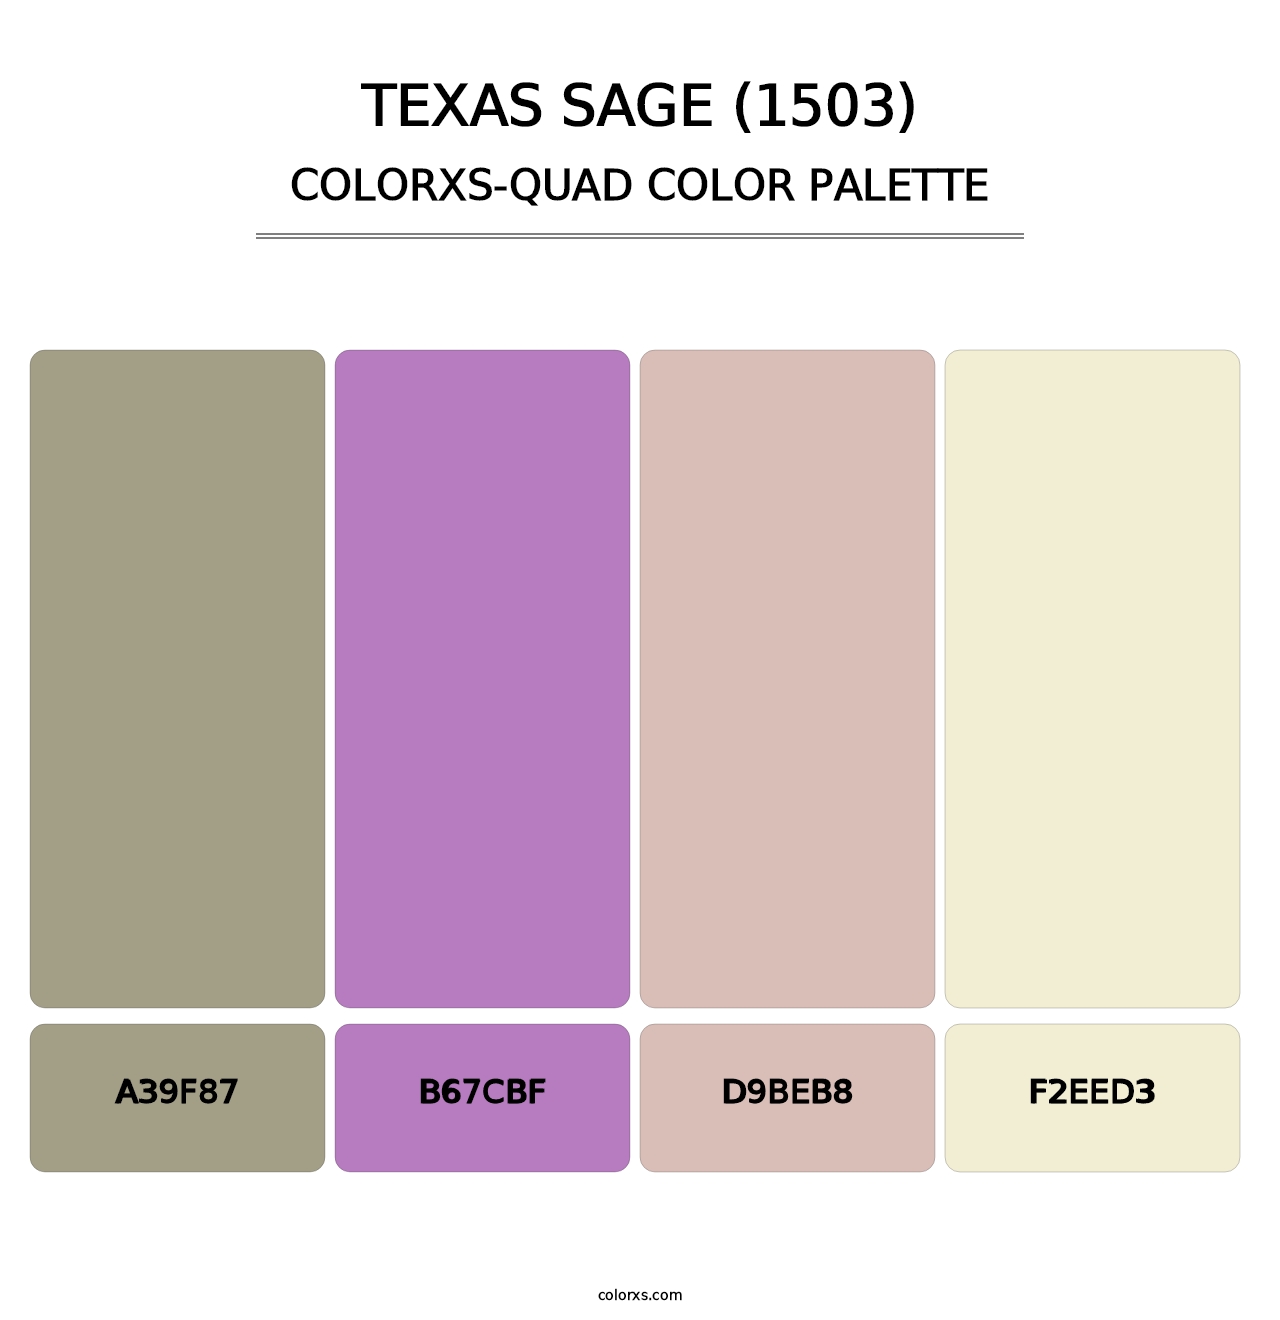 Texas Sage (1503) - Colorxs Quad Palette